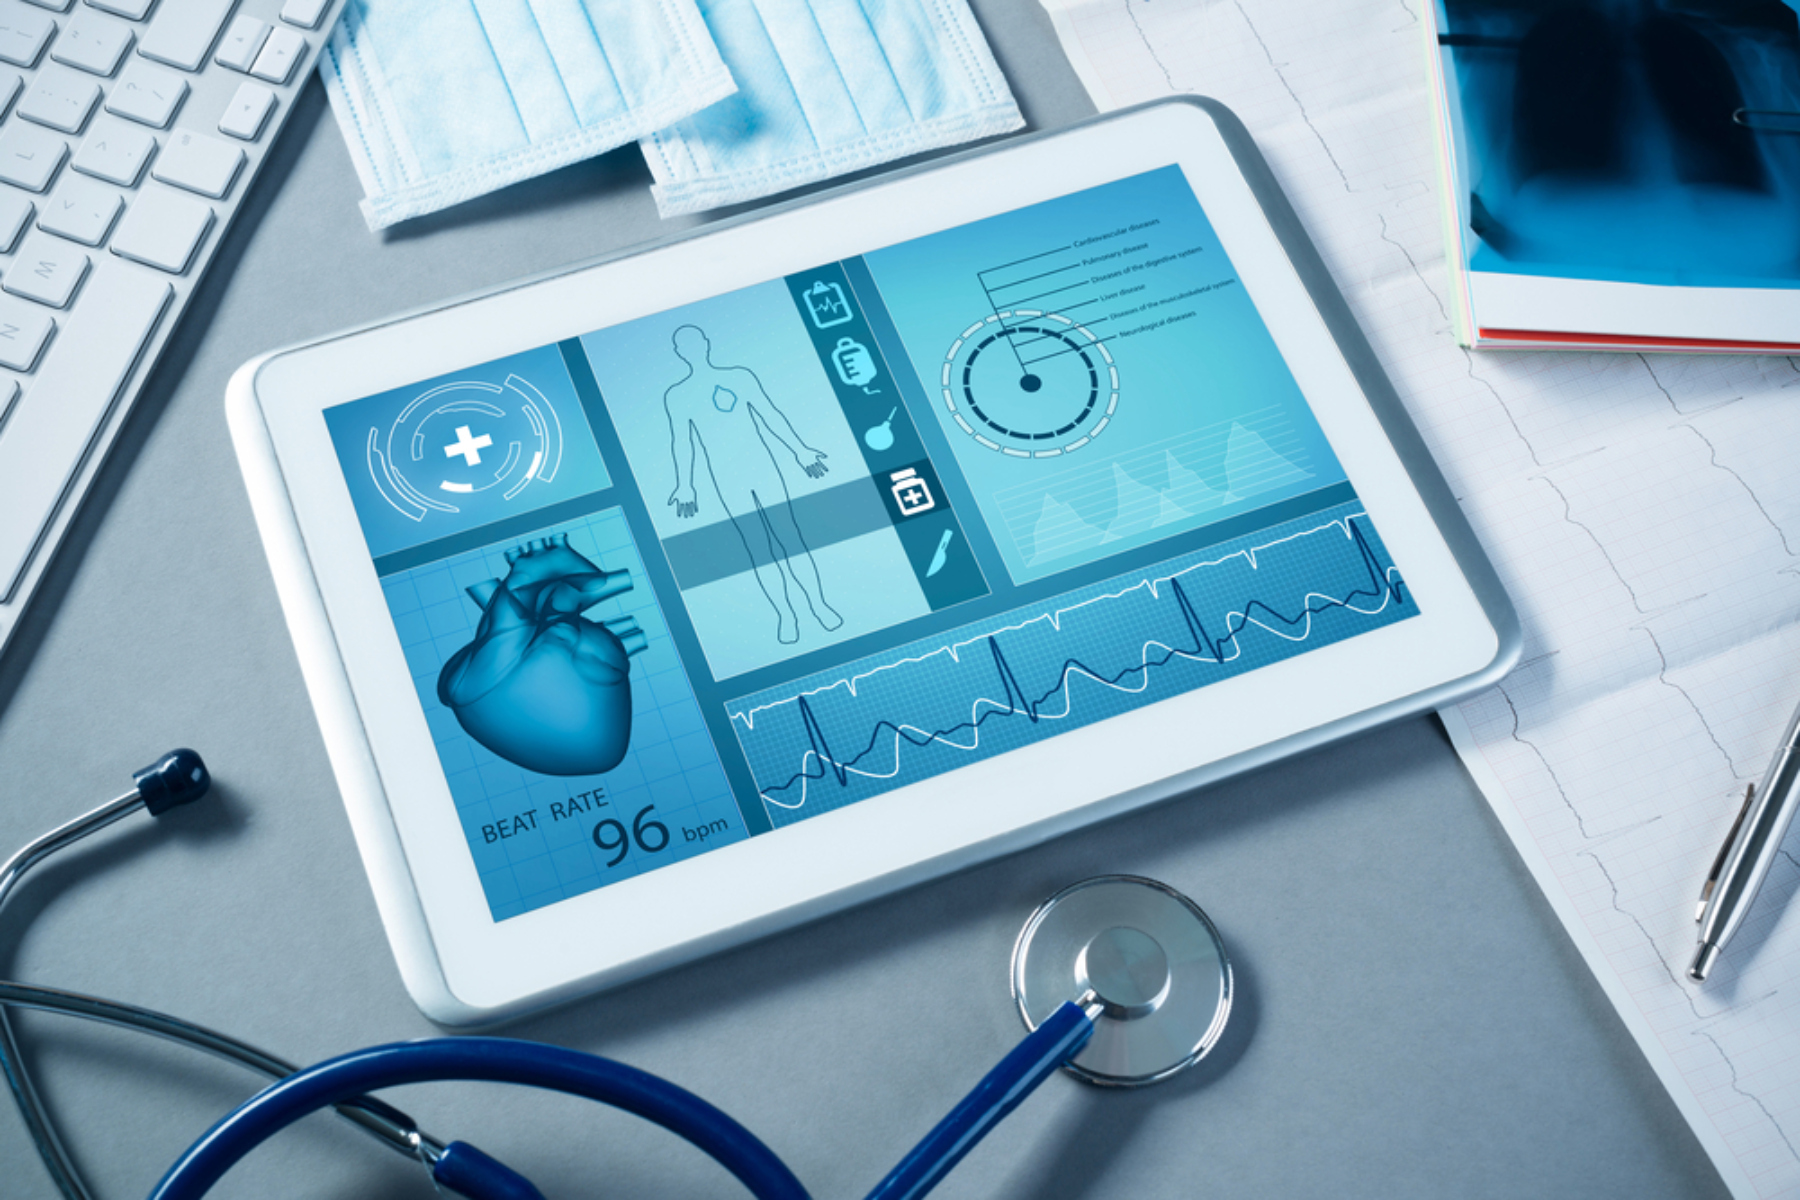 Τεχνολογία: Γιατί ο ιατρικός κλάδος δίνει μεγάλη σημασία στην ανάπτυξη των τεχνολογικών μέσων;